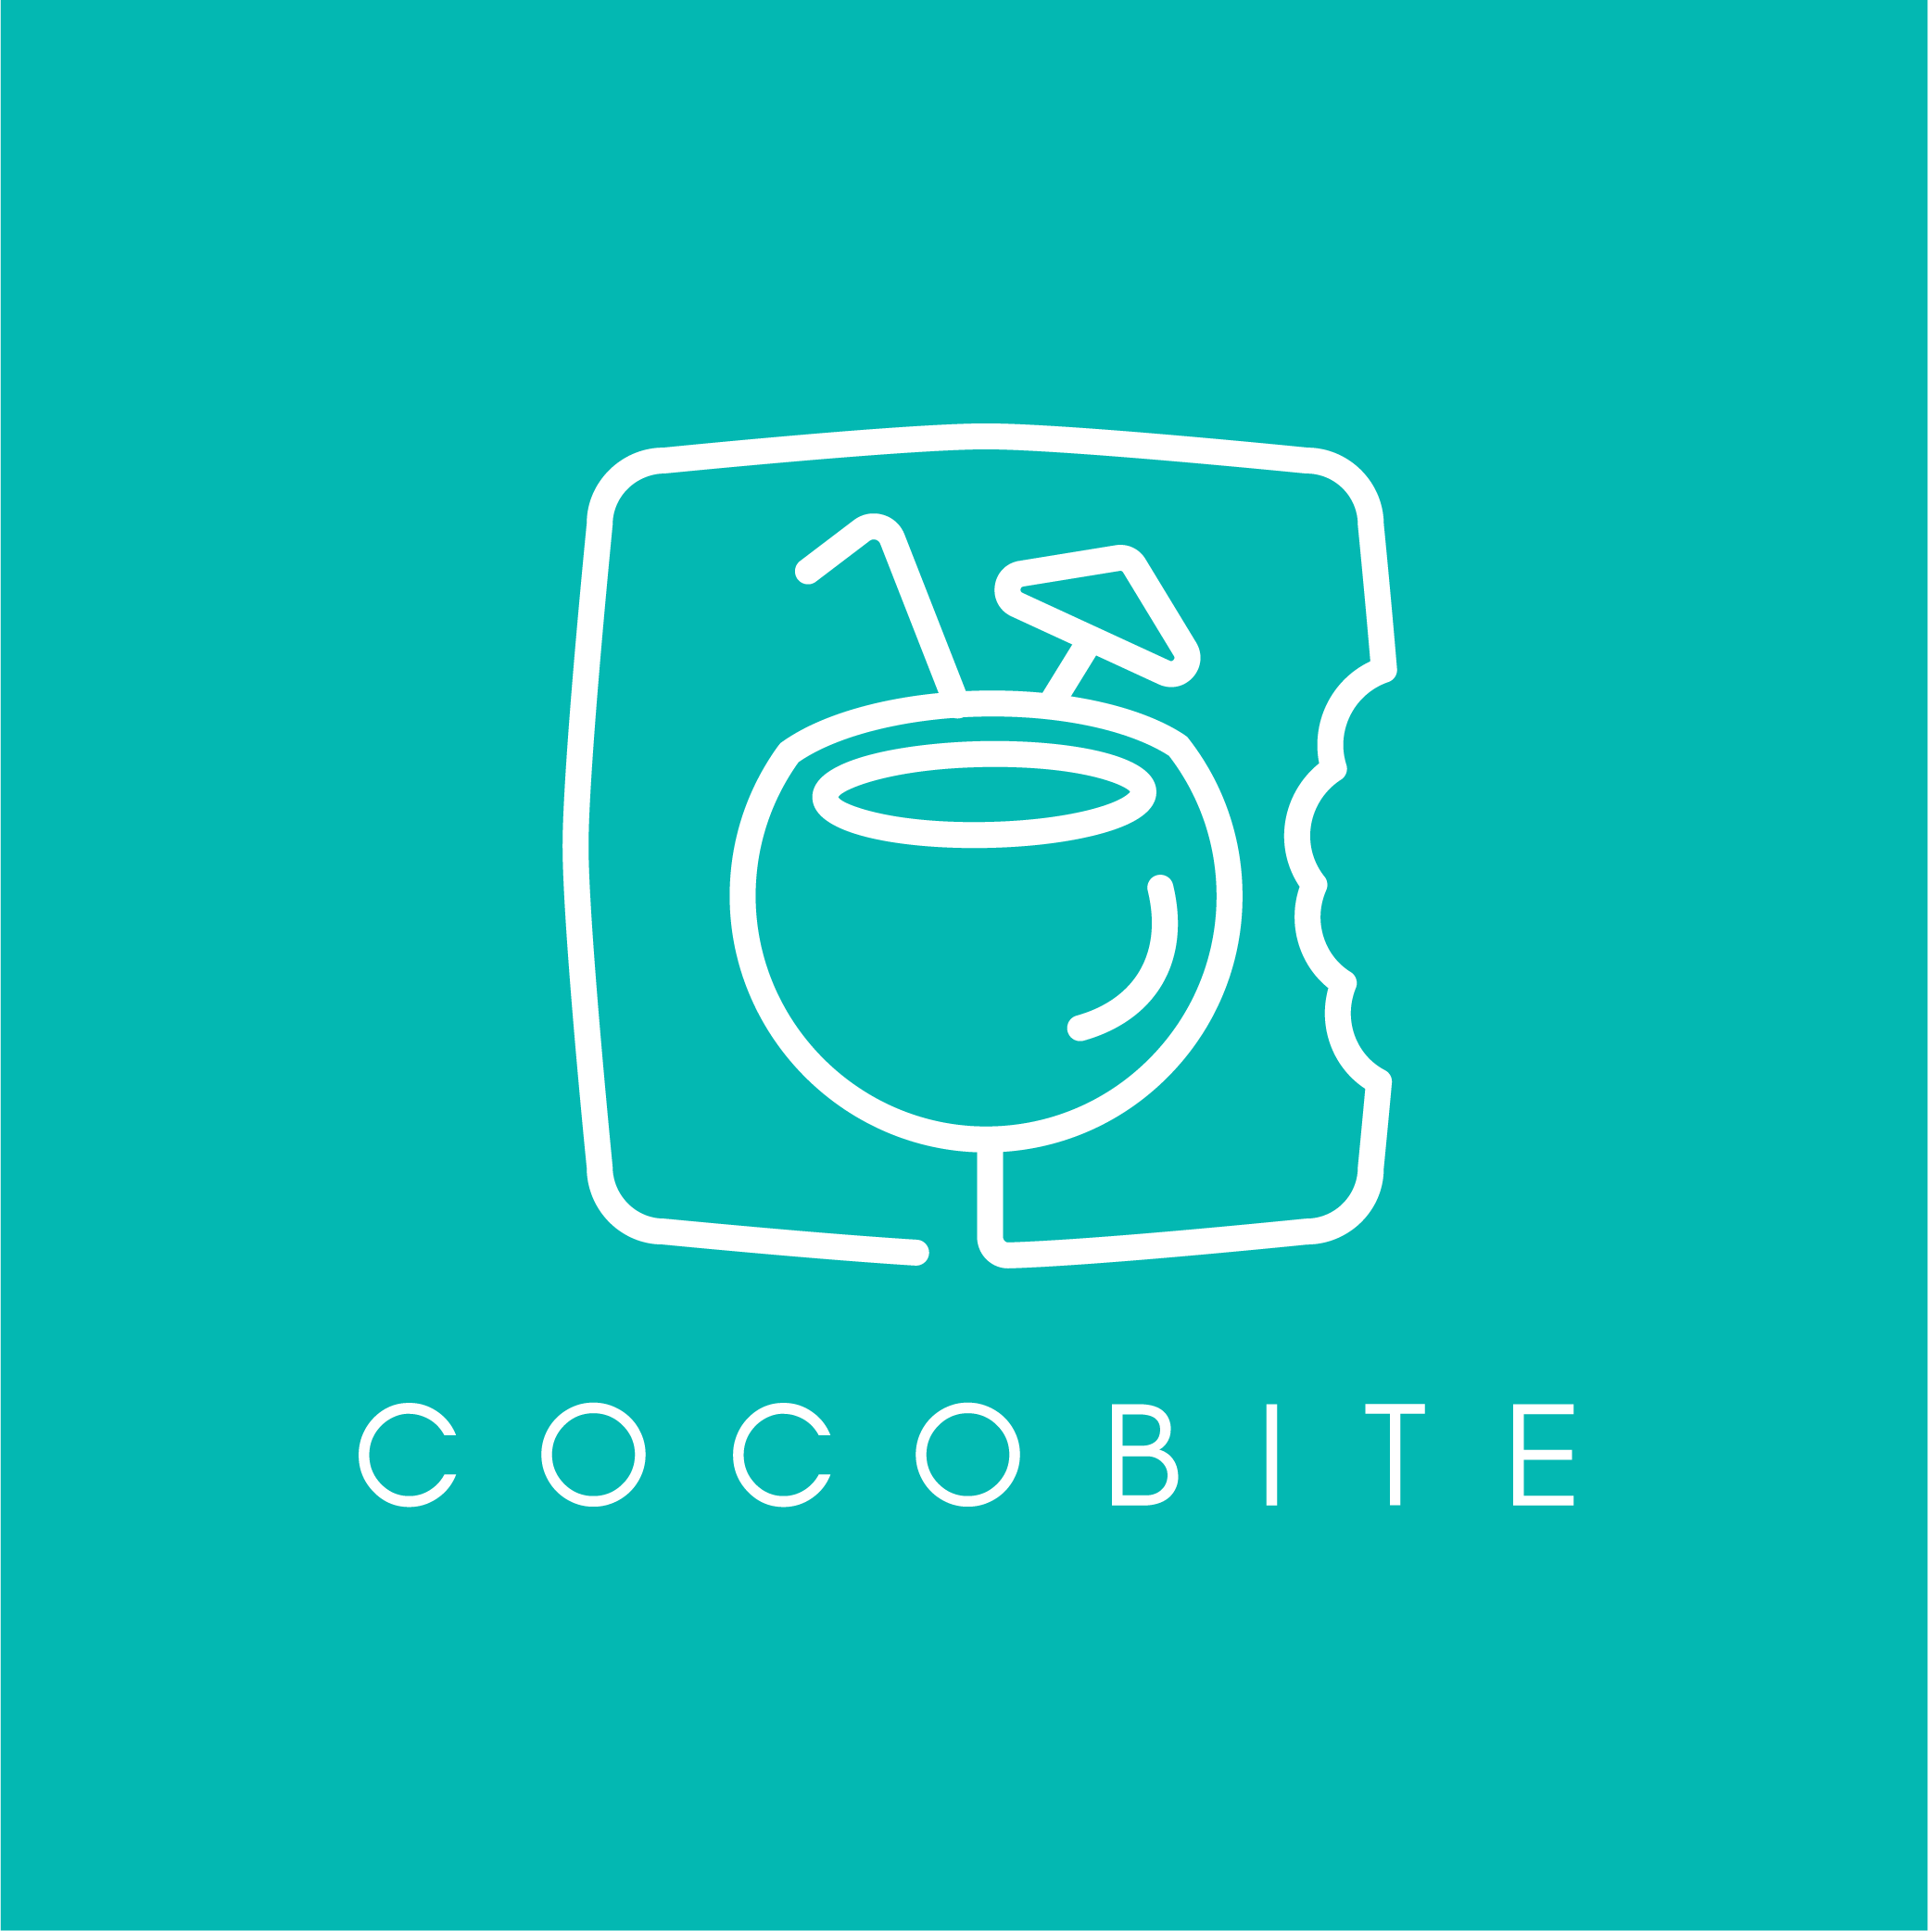 Cocobite